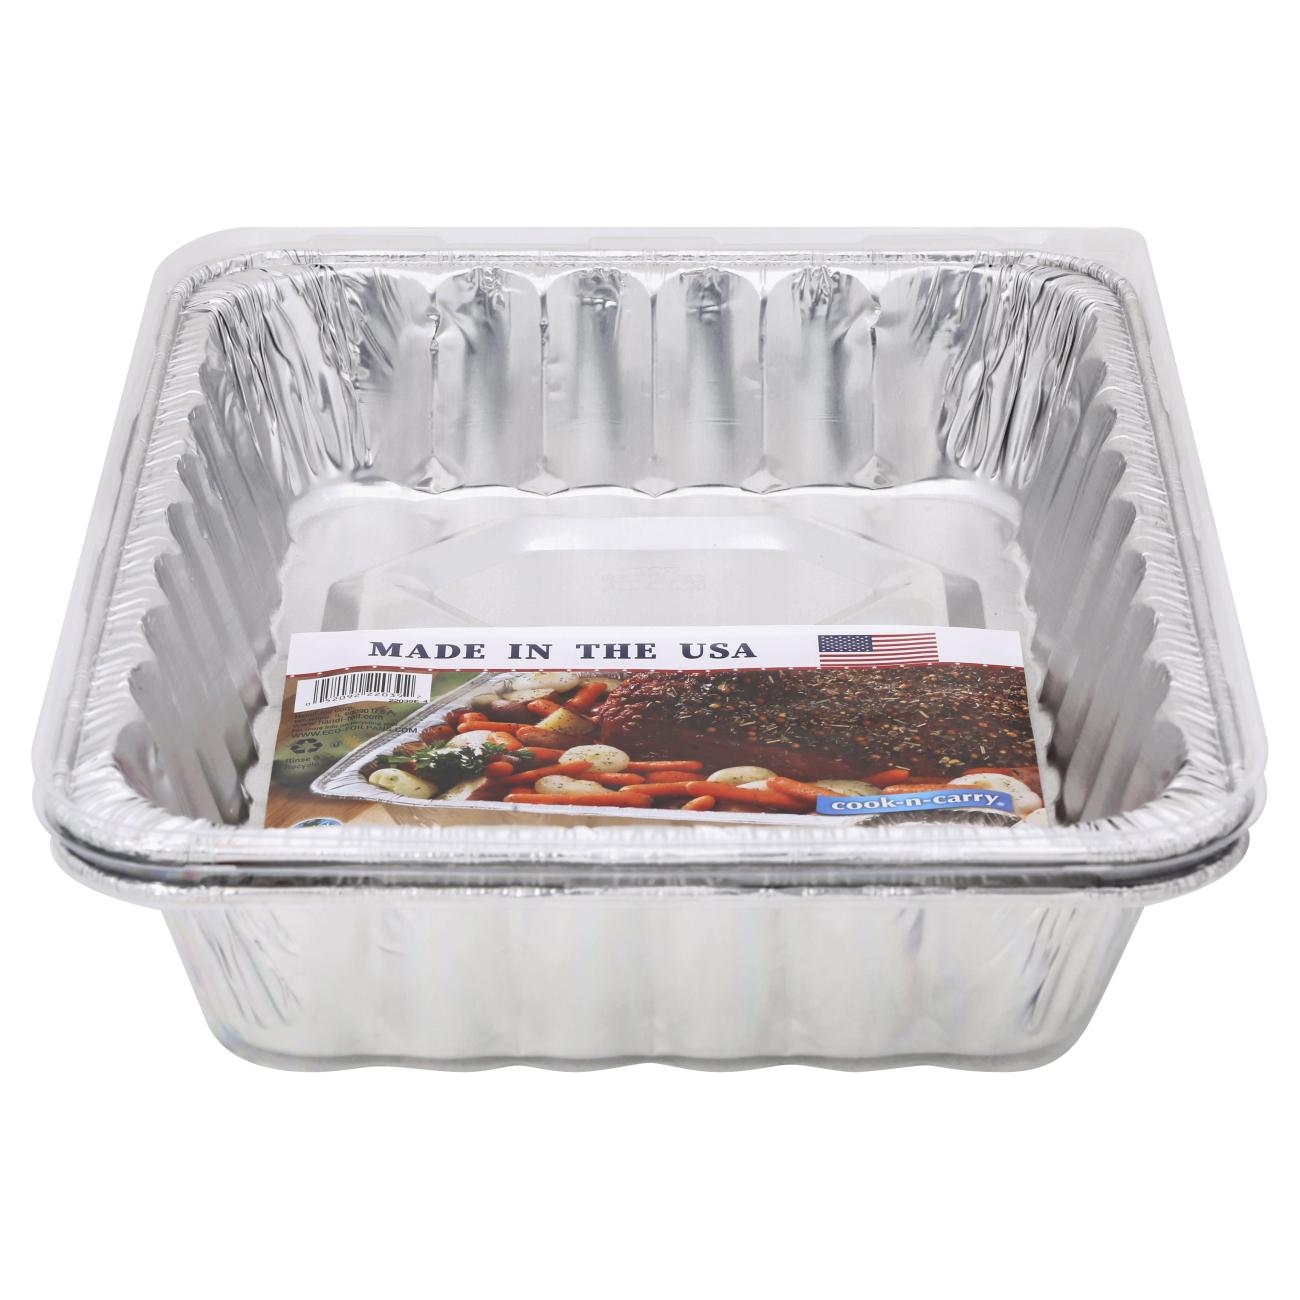 Handi-Foil Cook-n-Carry Rack Roaster Pan & Lid; image 2 of 2